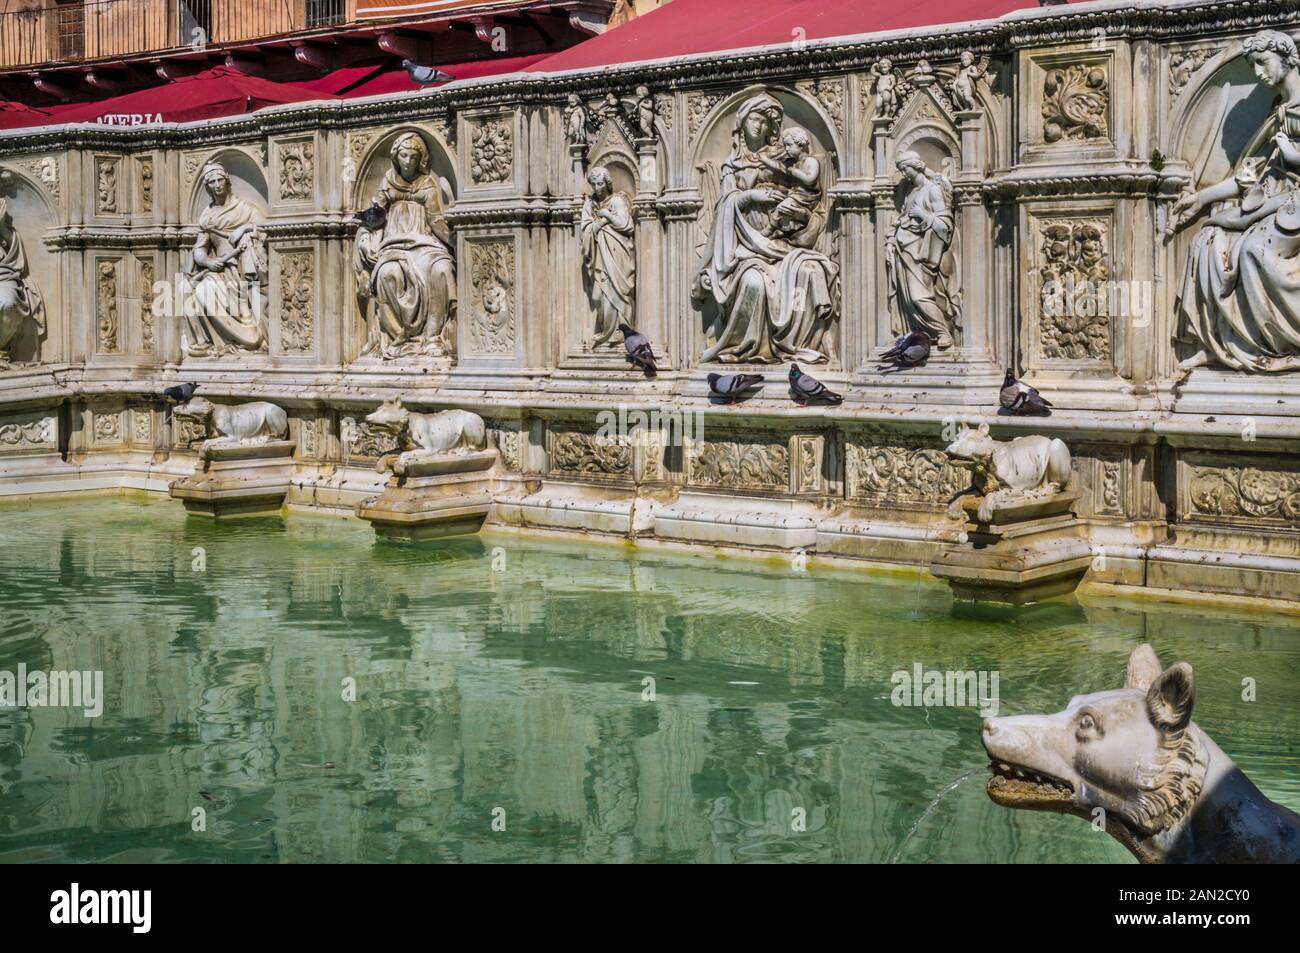 Fontana Gaia a Piazza del campo, una fontana monumentale con rilievi e statue dell'Antico Testamento e lupi d'acqua, Siena, Toscana, Italia Foto Stock